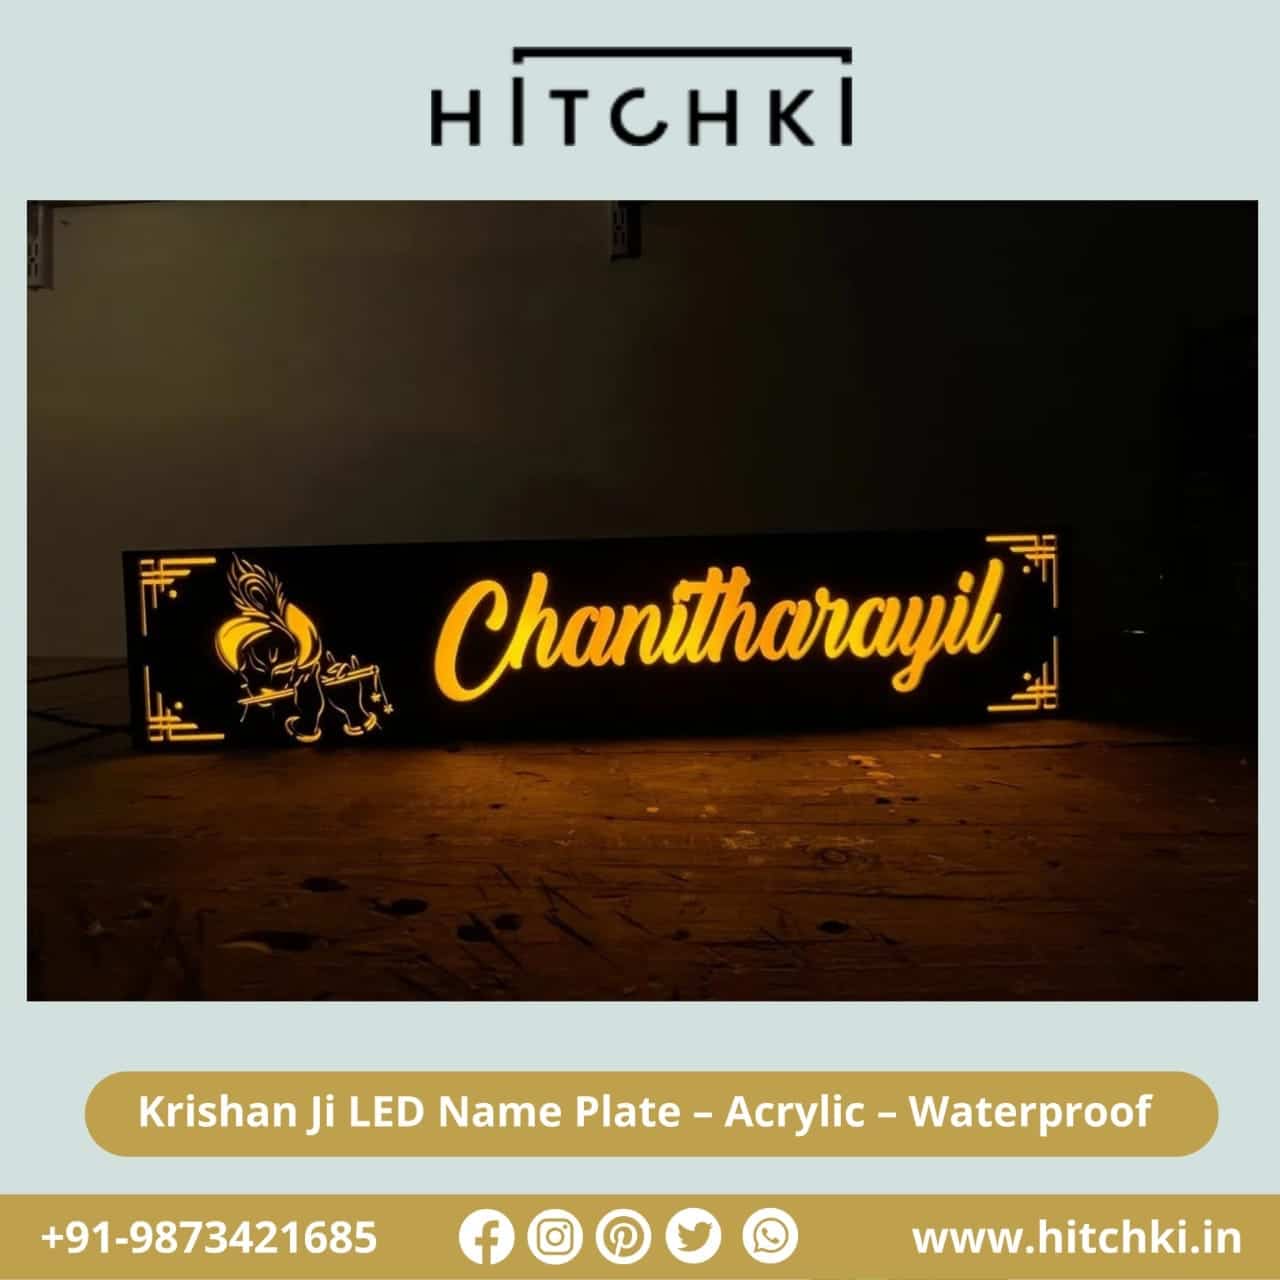 Waterproof Acrylic LED Nameplate Hitchki